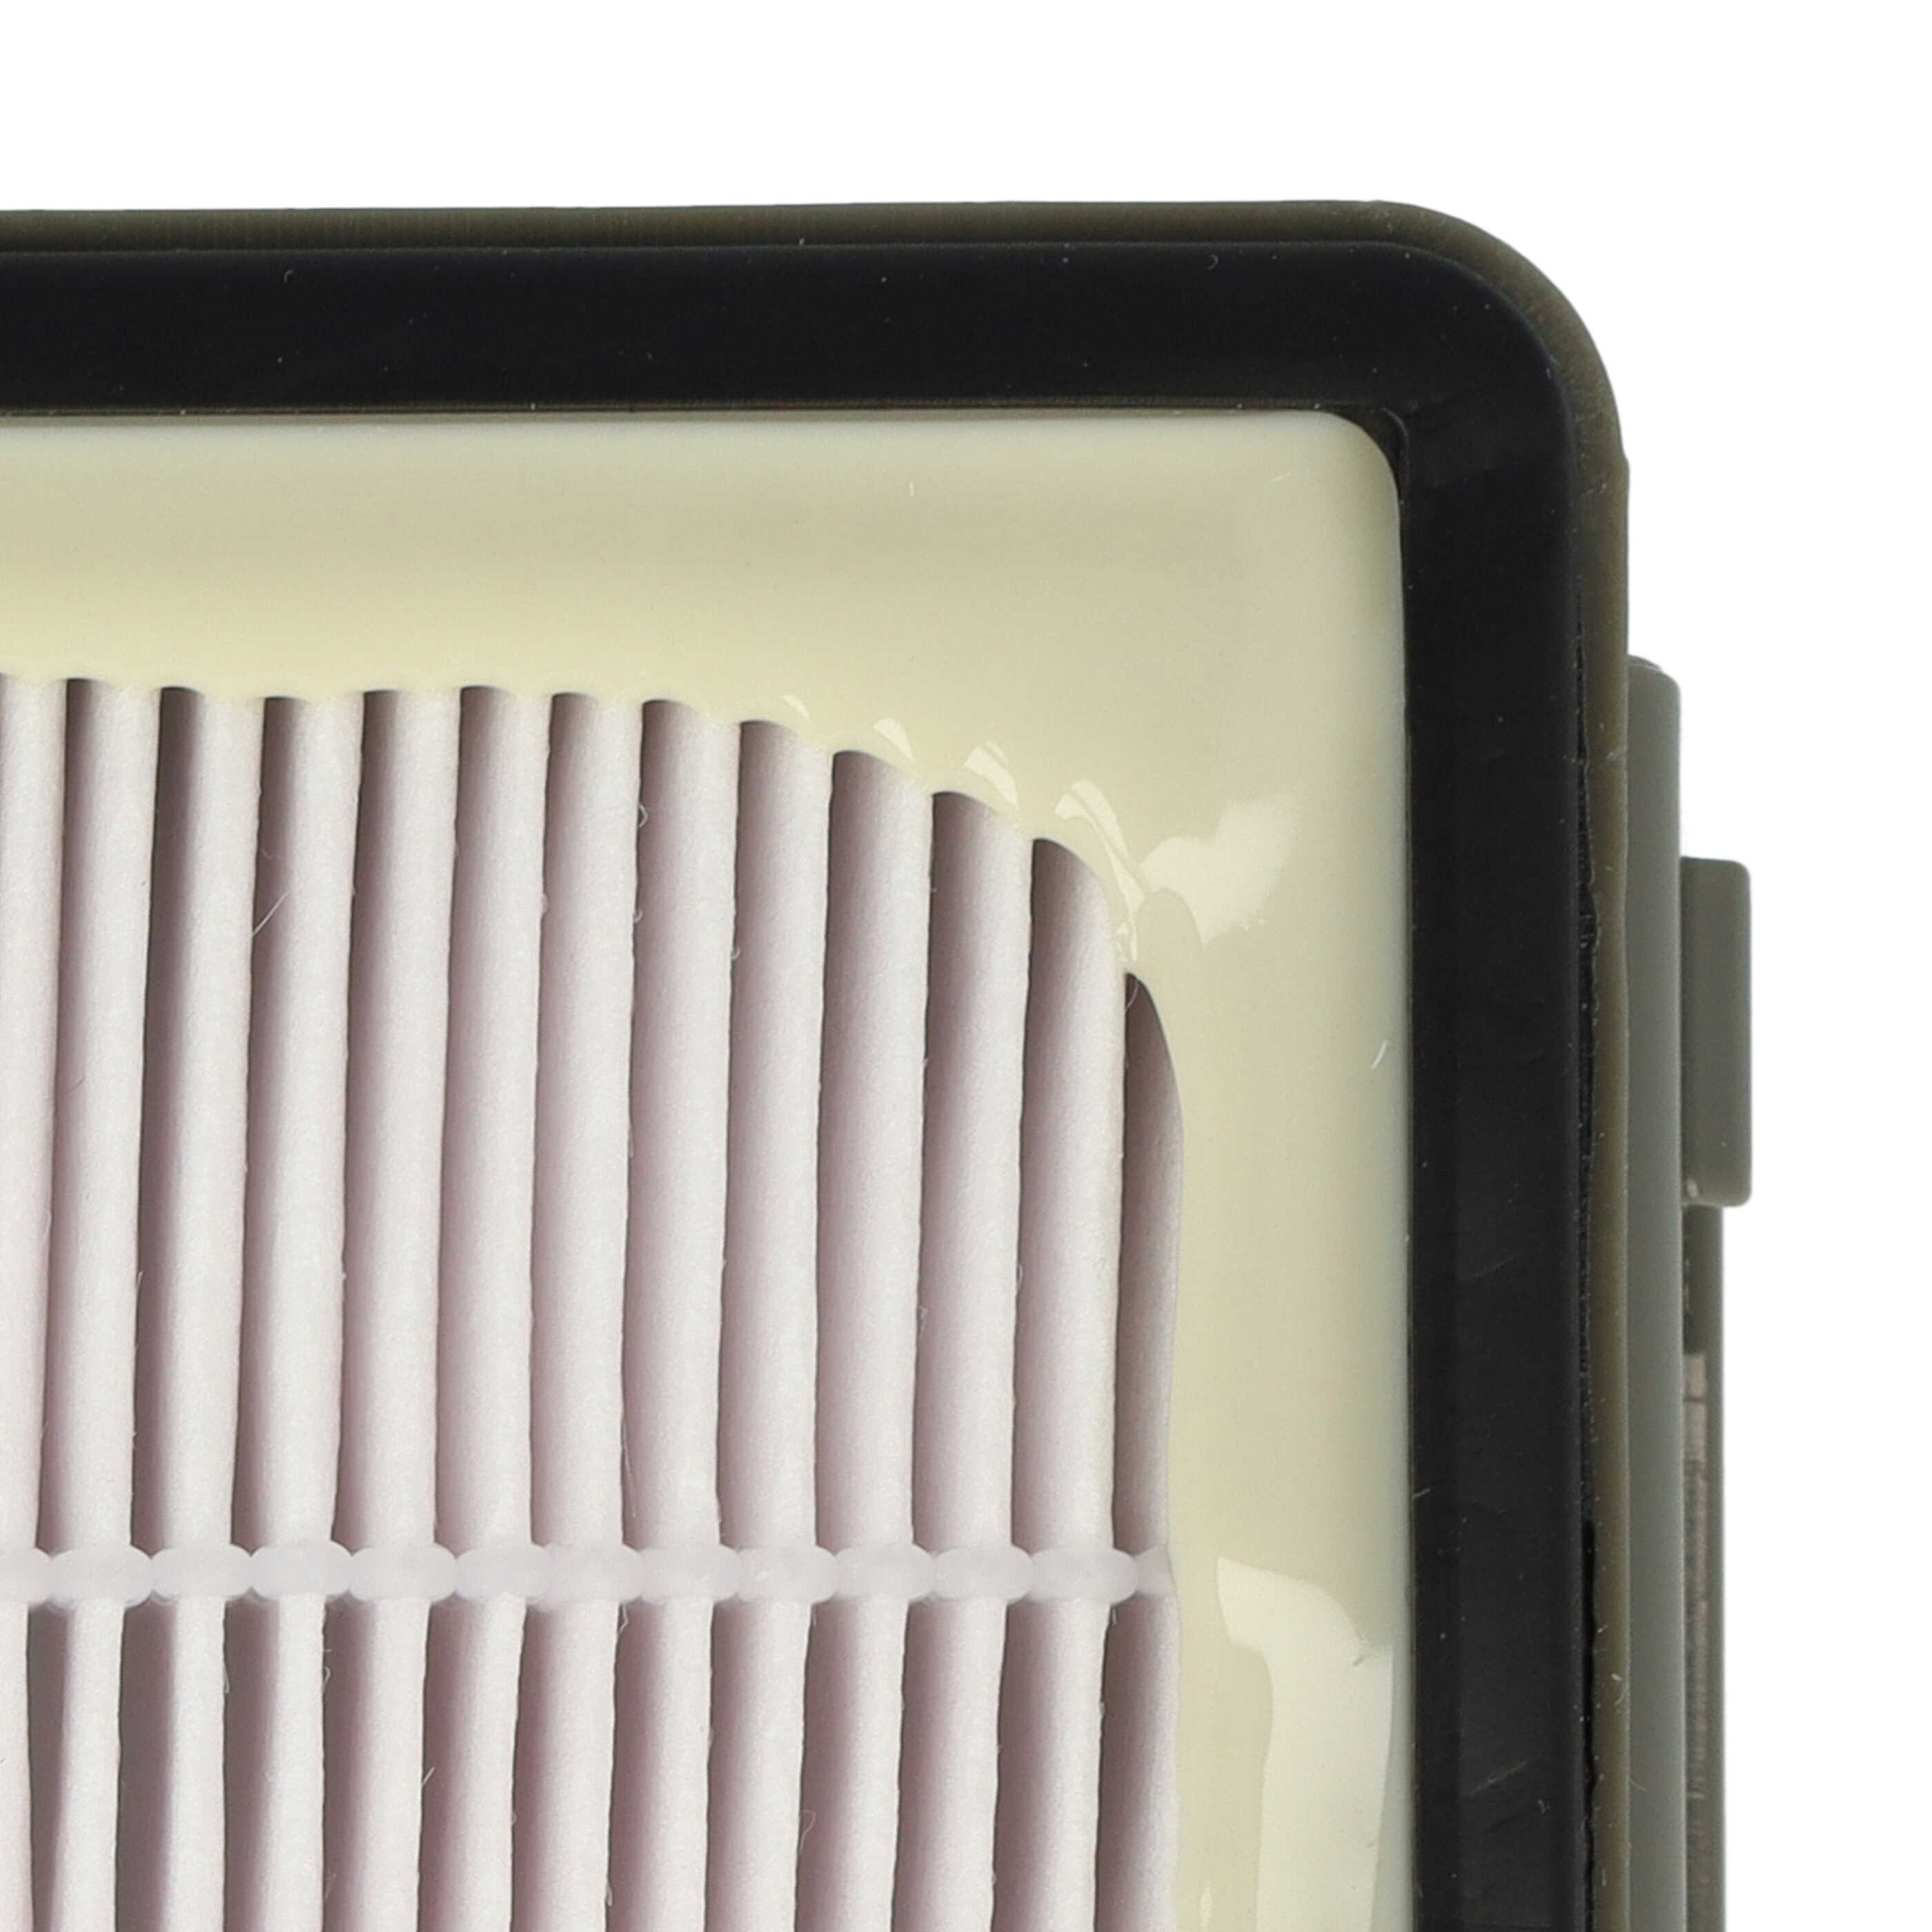 Filtre remplace Rowenta ZR903501, RS-RT900586 pour aspirateur - filtre HEPA d'évacuation